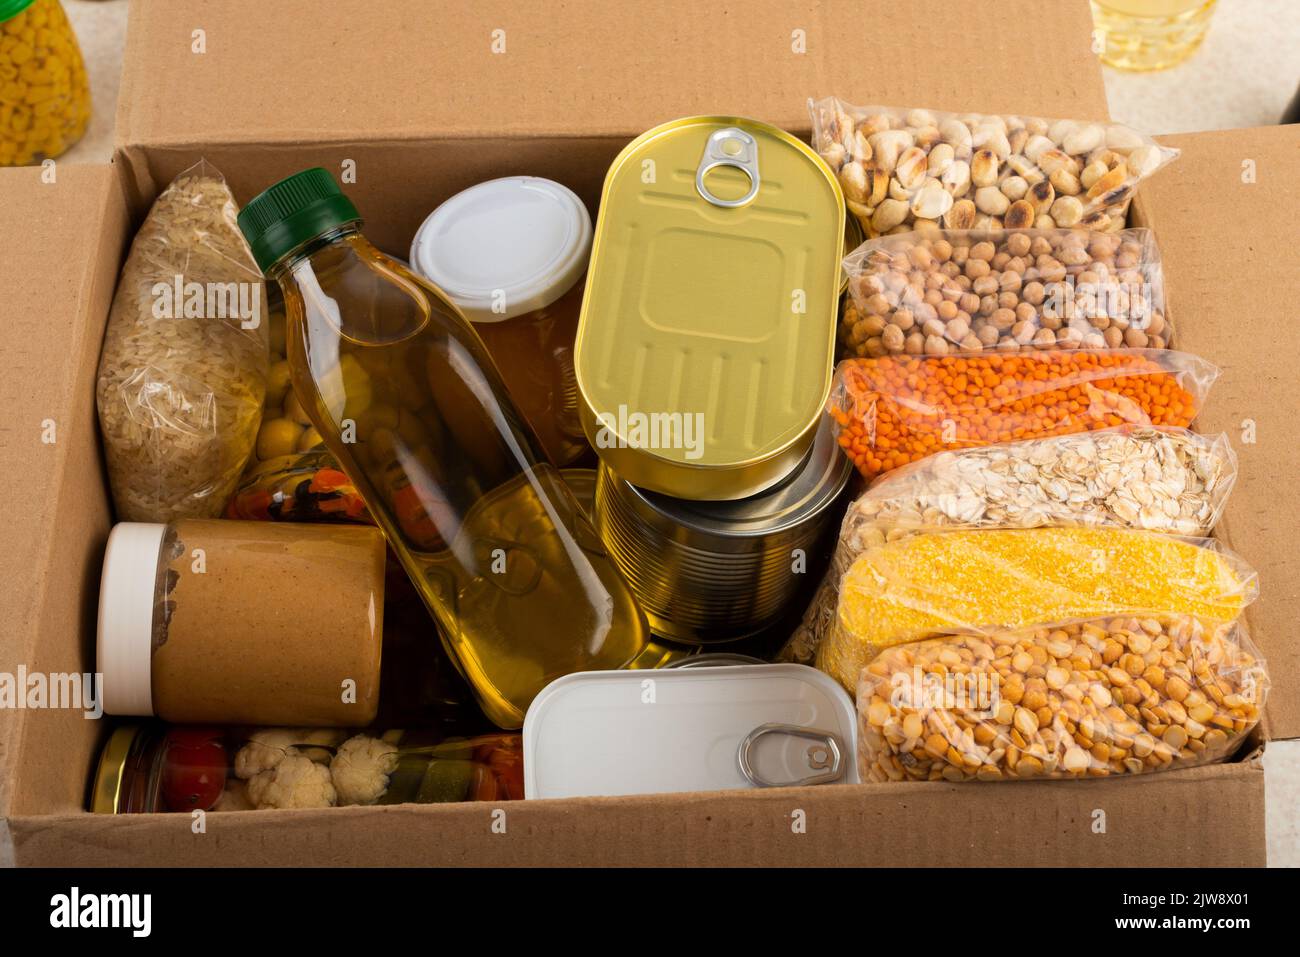 Survival set of nonperishable foods in carton box Stock Photo